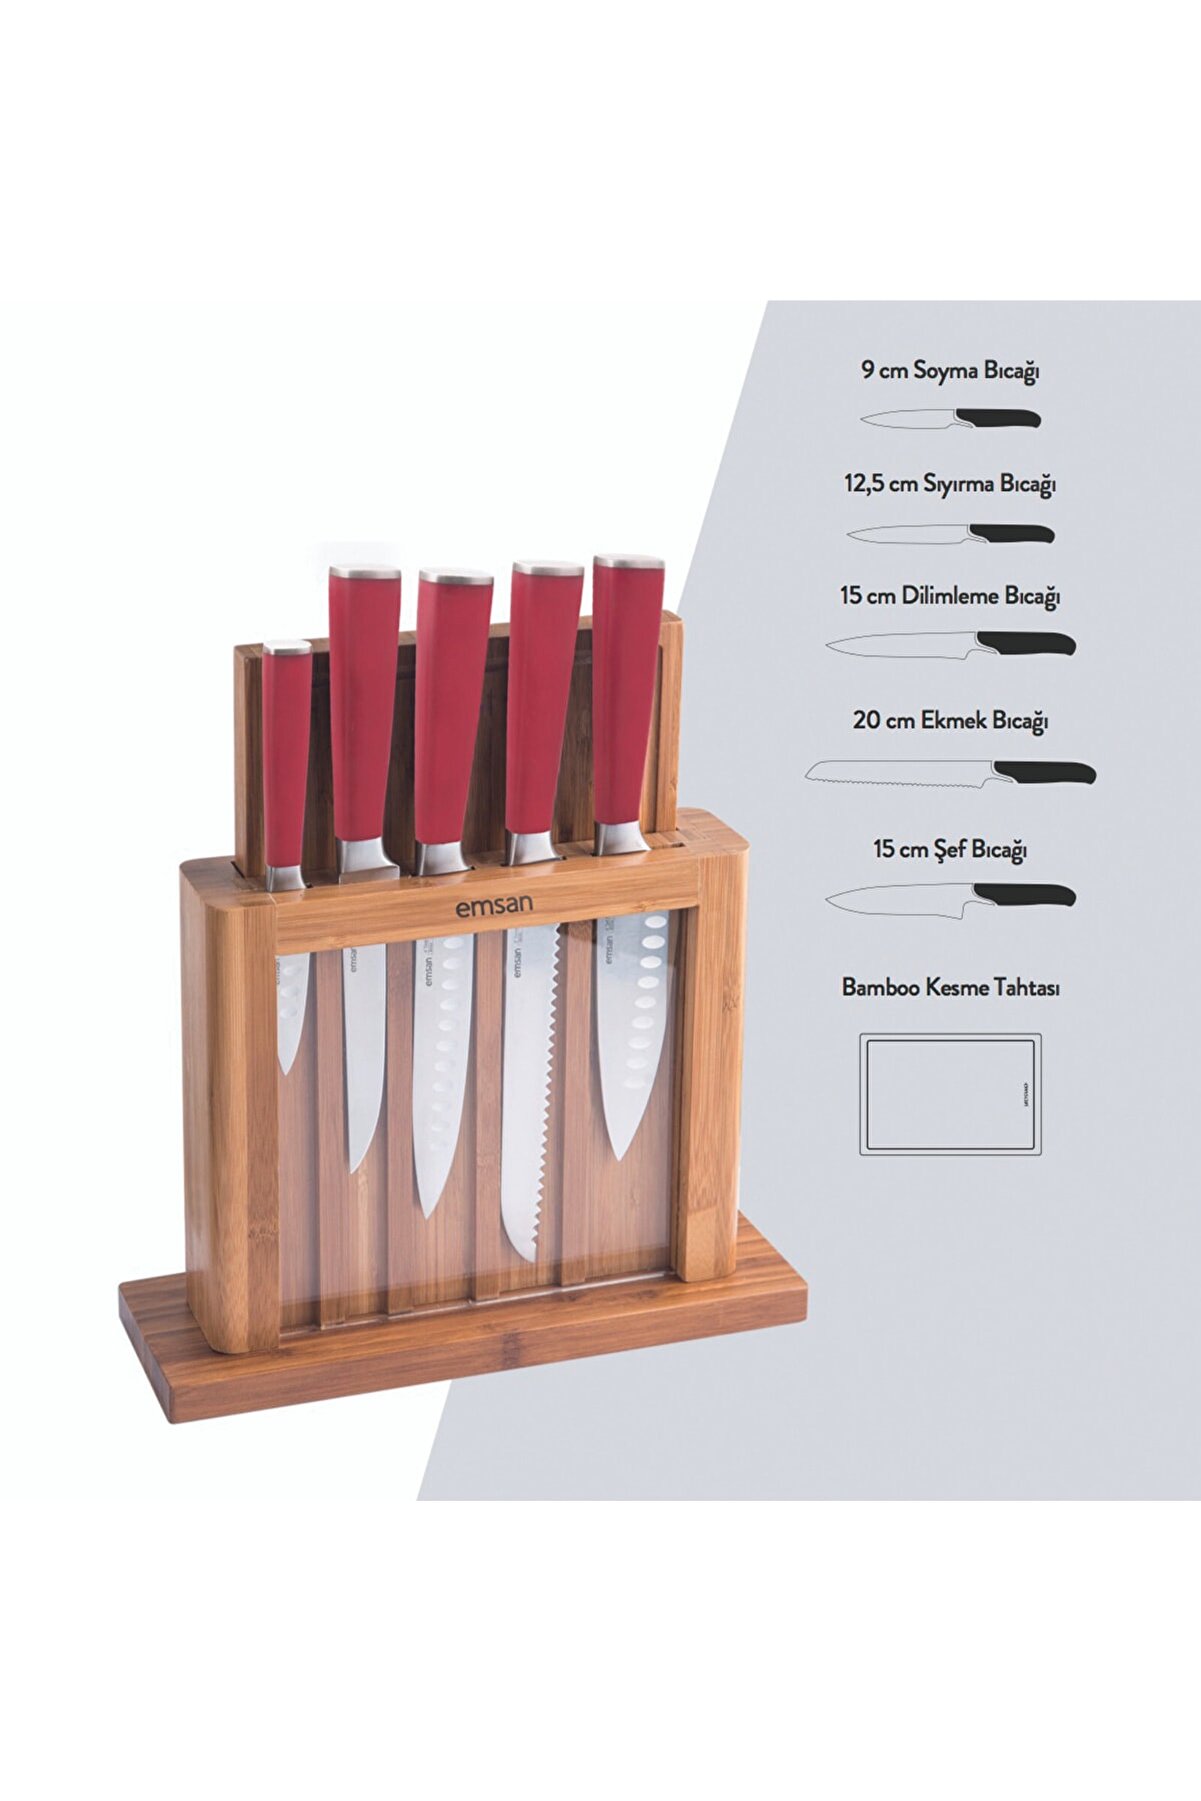 ست چاقوی آشپزخانه 7 پارچه امسان مدل Emsan Matriks Kirmizi 